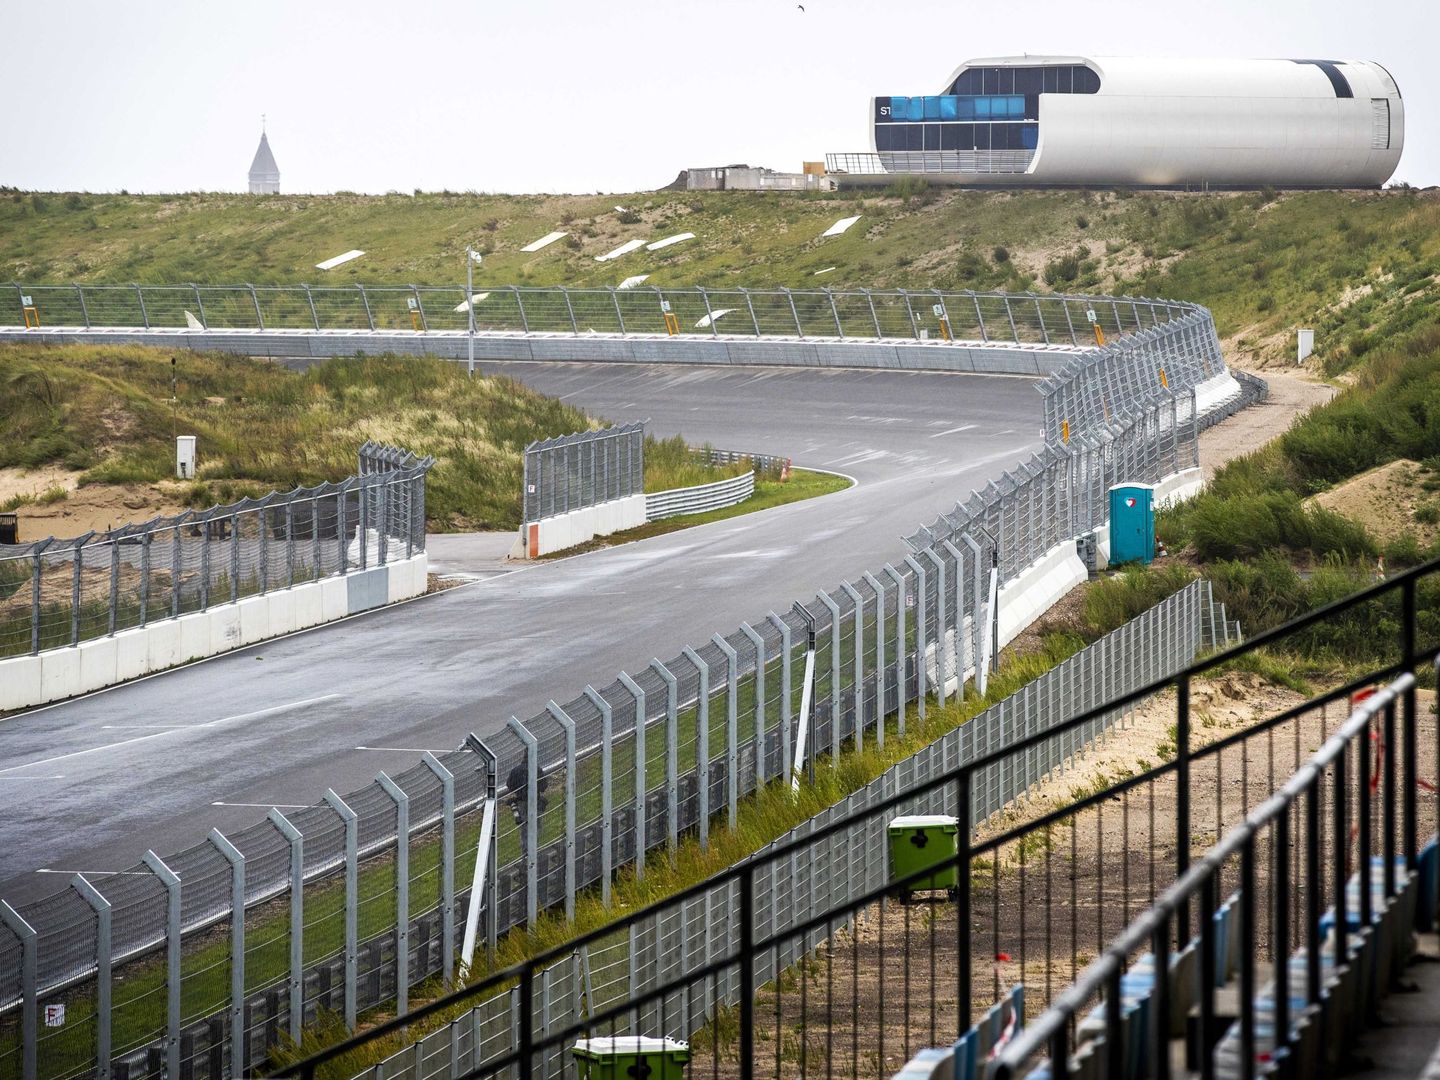 Zandvoort ha experimentado una total renovación incorporando una espectacular curva peraltada.